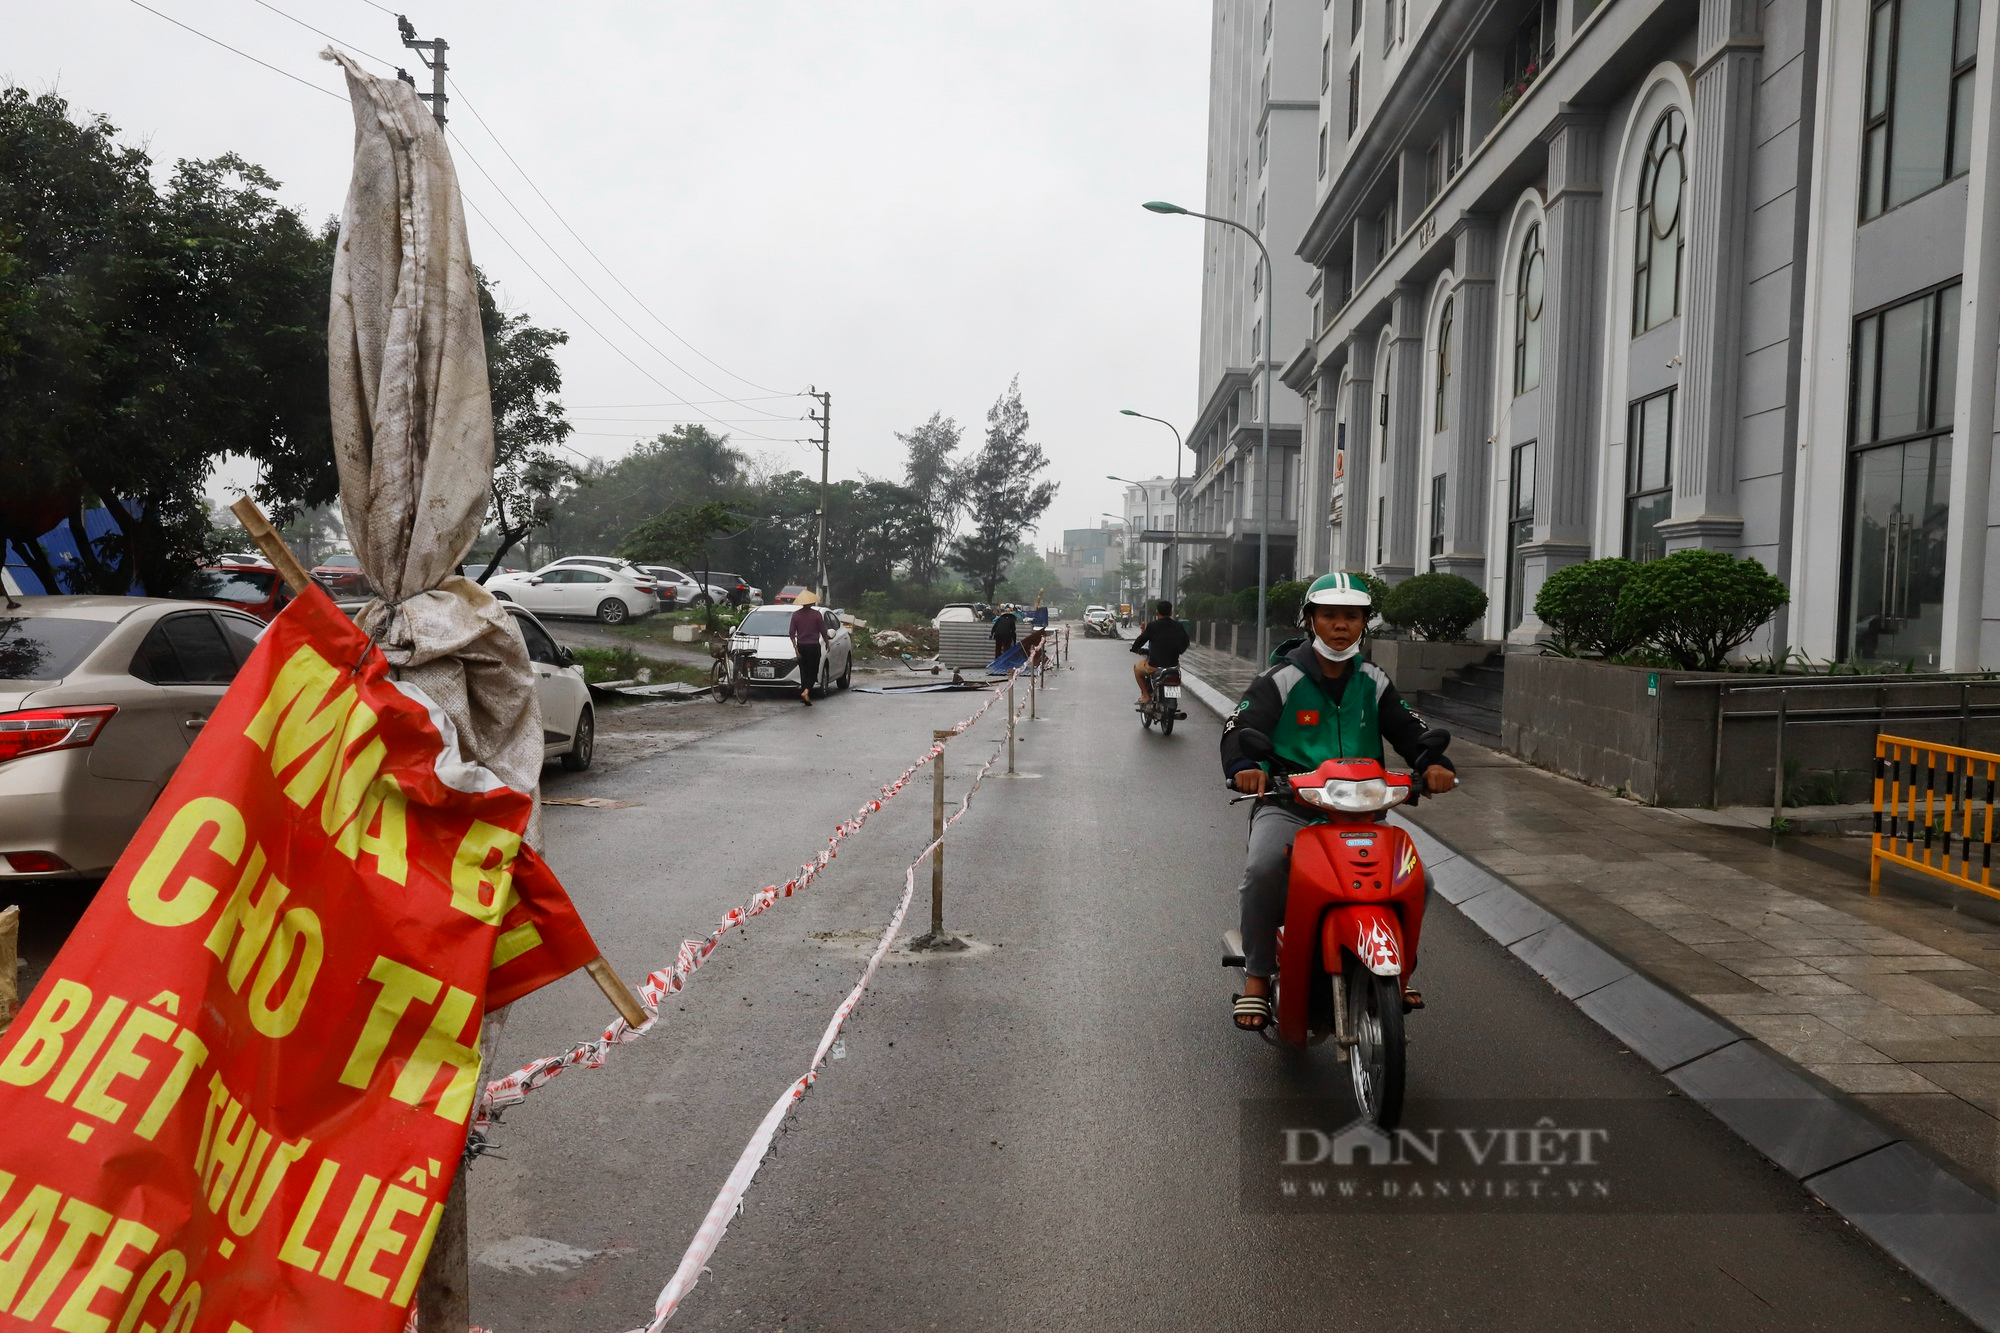 Đóng cột kiên cố, dựng hàng rào dây thép gai giữa đường tại chung cư nghìn dân sinh sống ở Hà Nội - Ảnh 2.